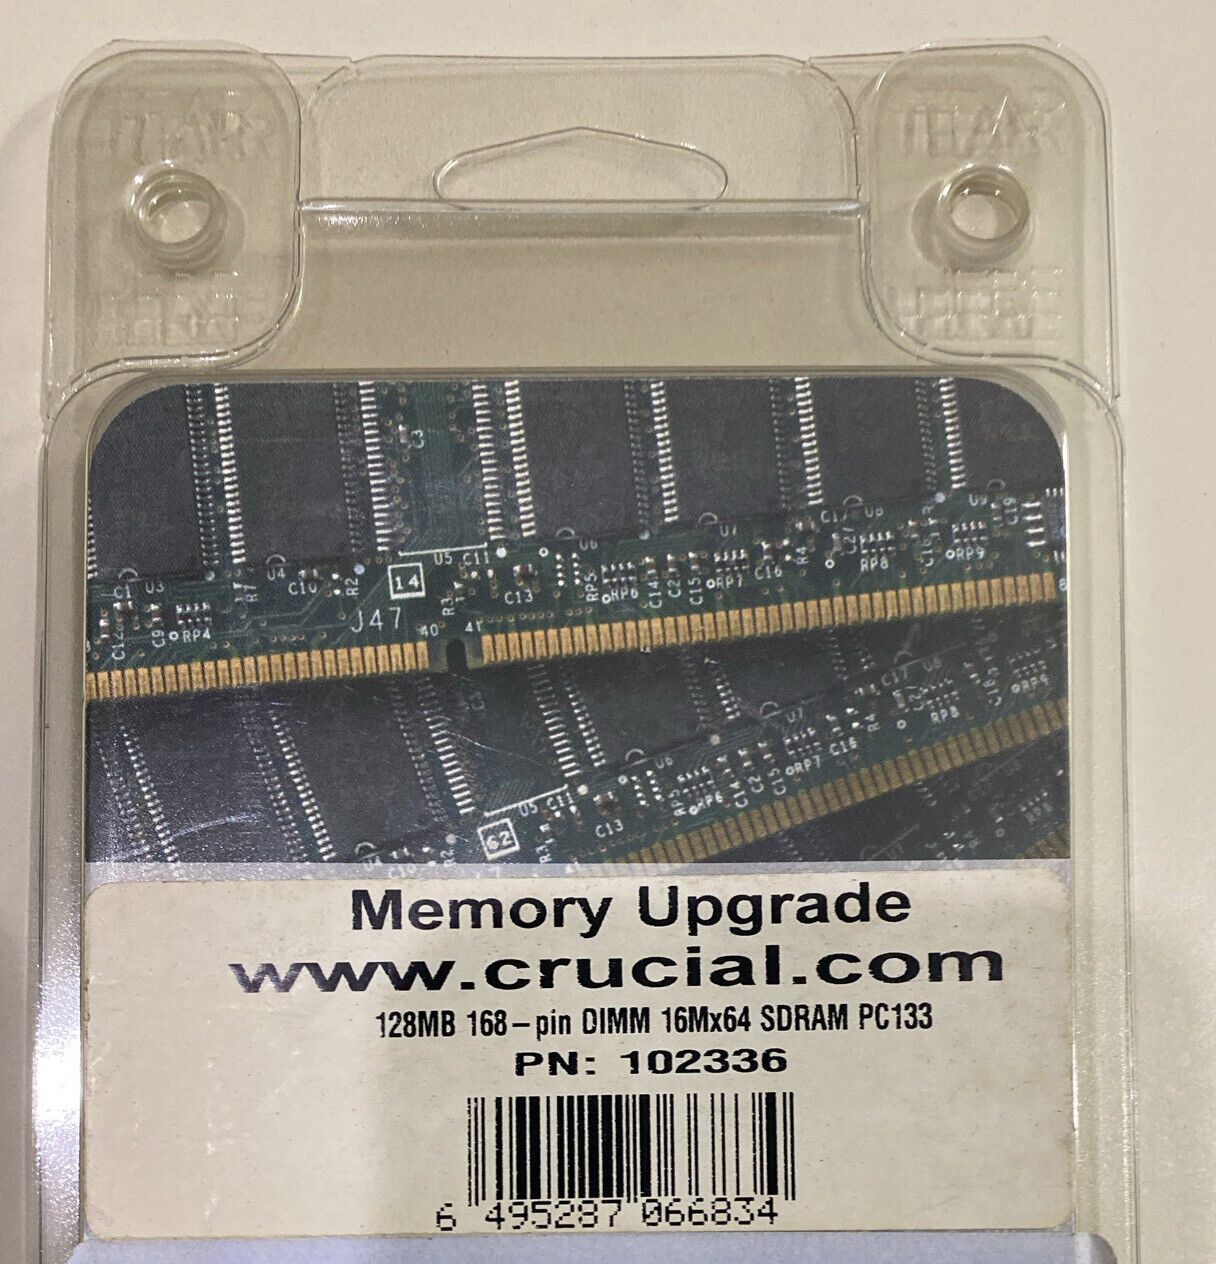 CRUCIAL 102336 128Mb 168 Pin DIMM 16x64 SDRAM PC133